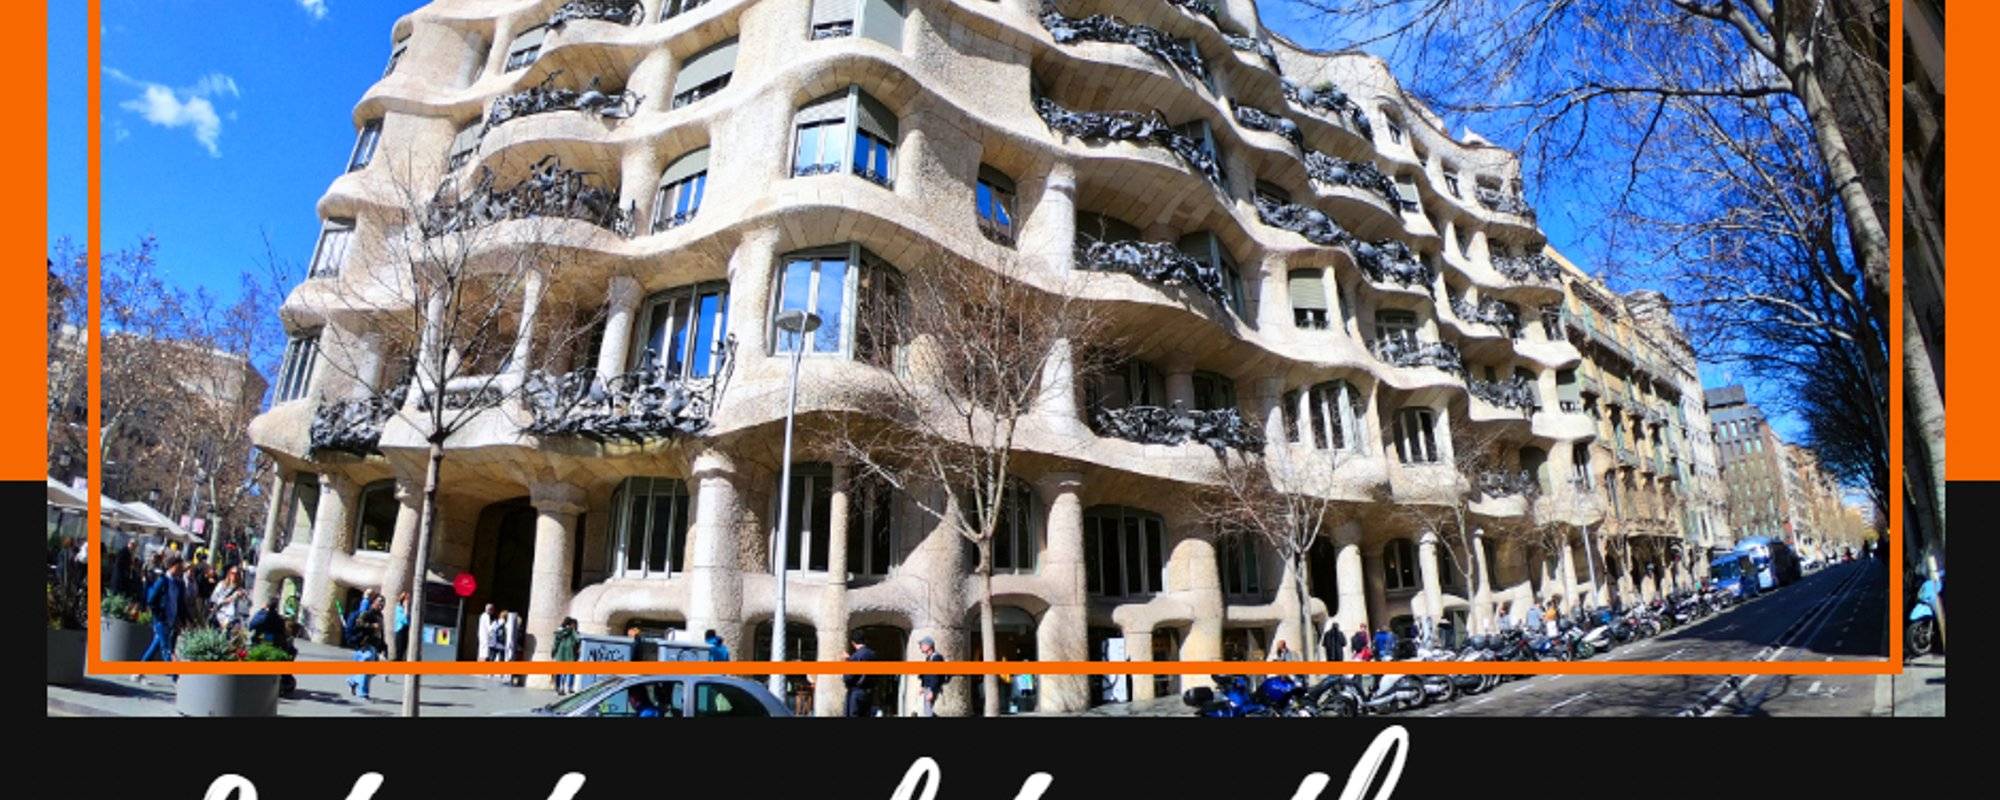 Let's travel together #115 - Casa Milà (Barcelona Tour)